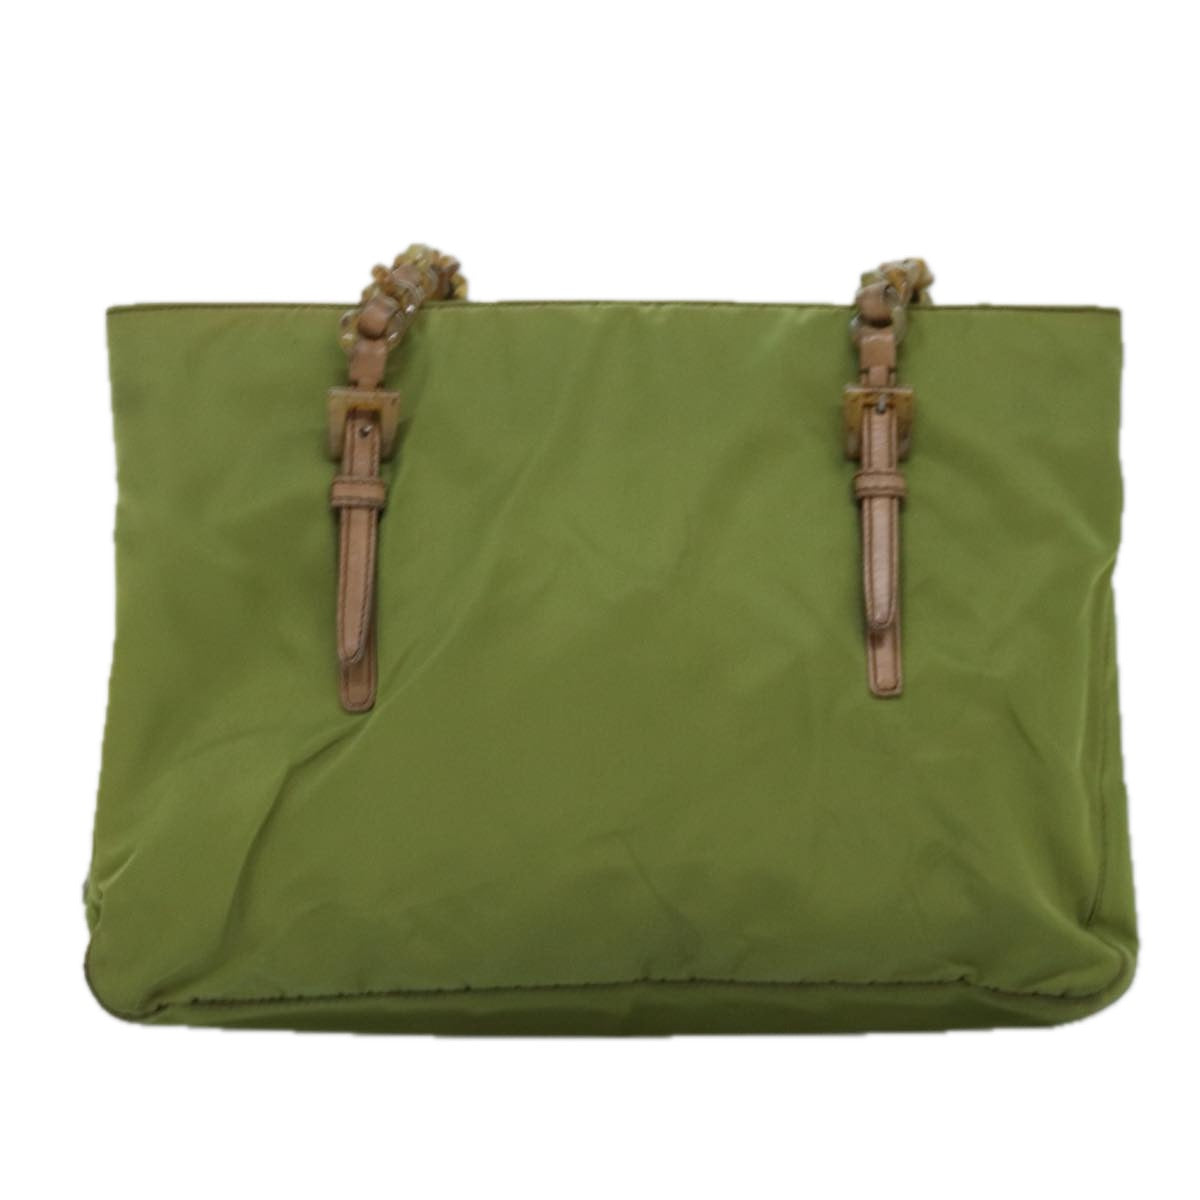 PRADA Chain Tote Bag Nylon Khaki Auth 74538 - 0